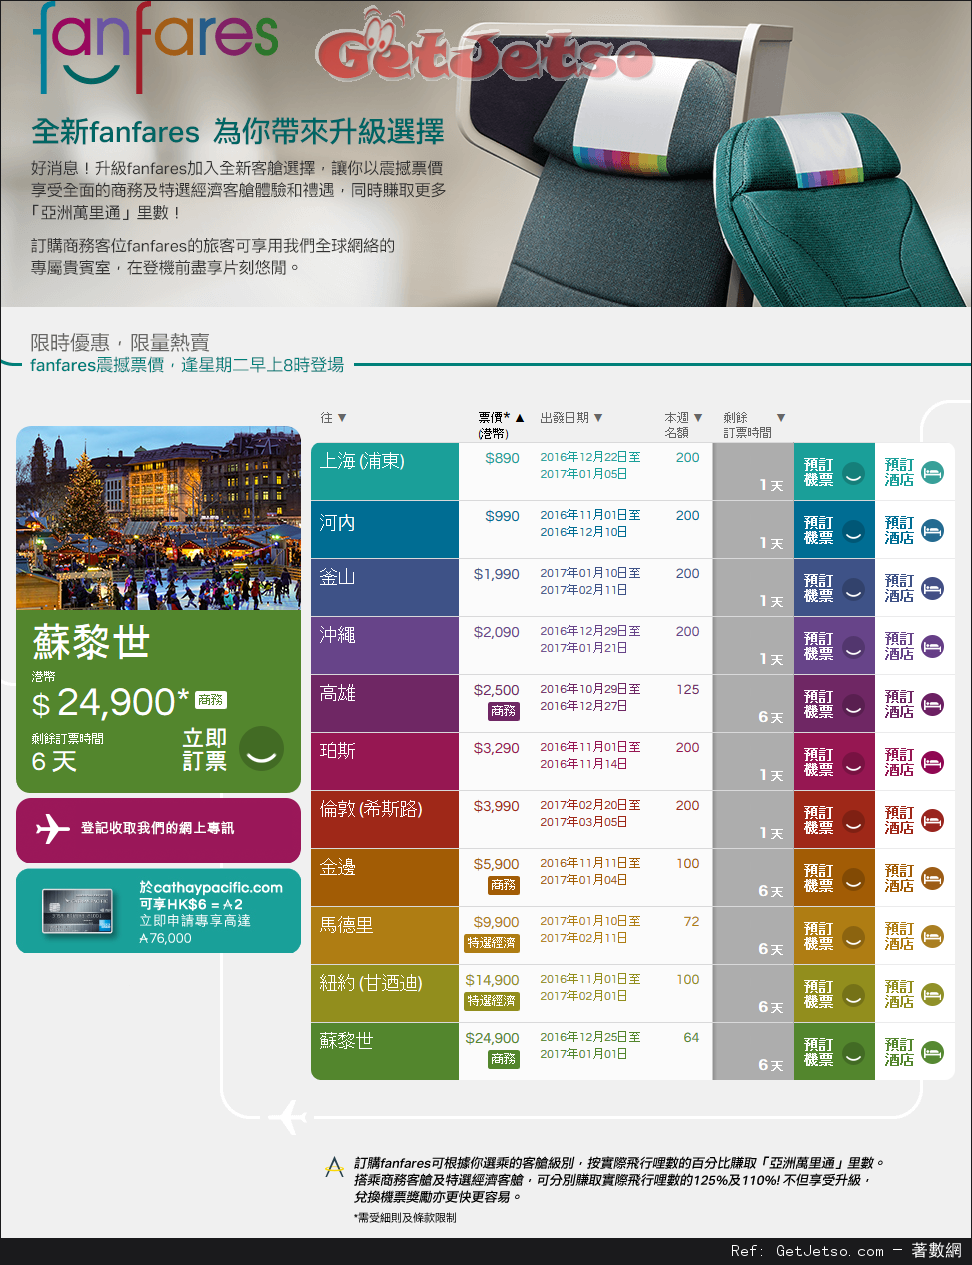 國泰及港龍航空fanfares震撼價機票優惠(至16年10月30日)圖片1